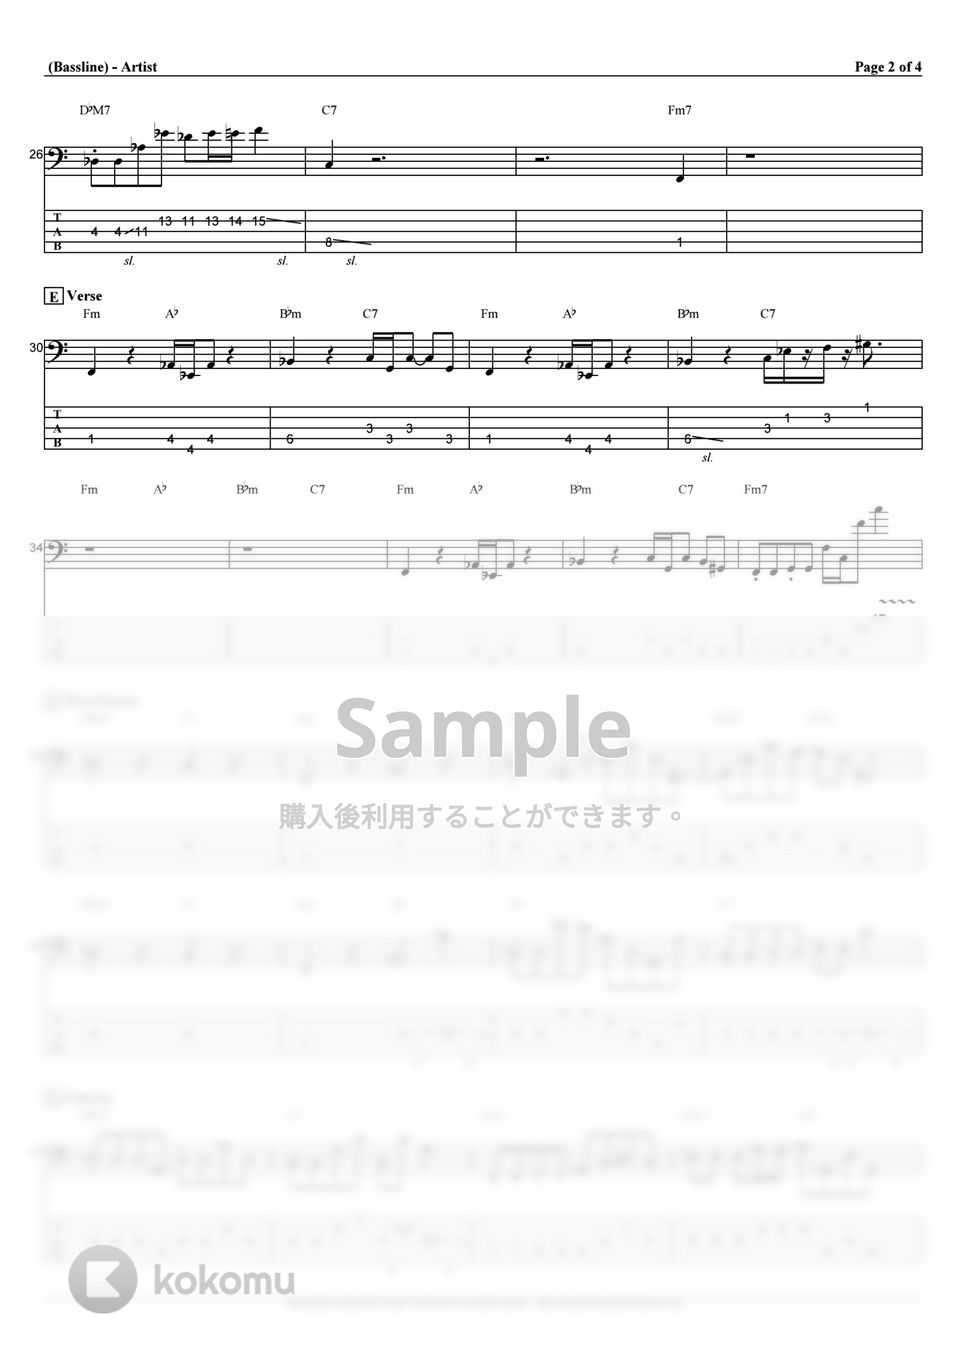 東京リベンジャーズ - ここで息をして (ベース Tab譜 5弦) by T's bass score